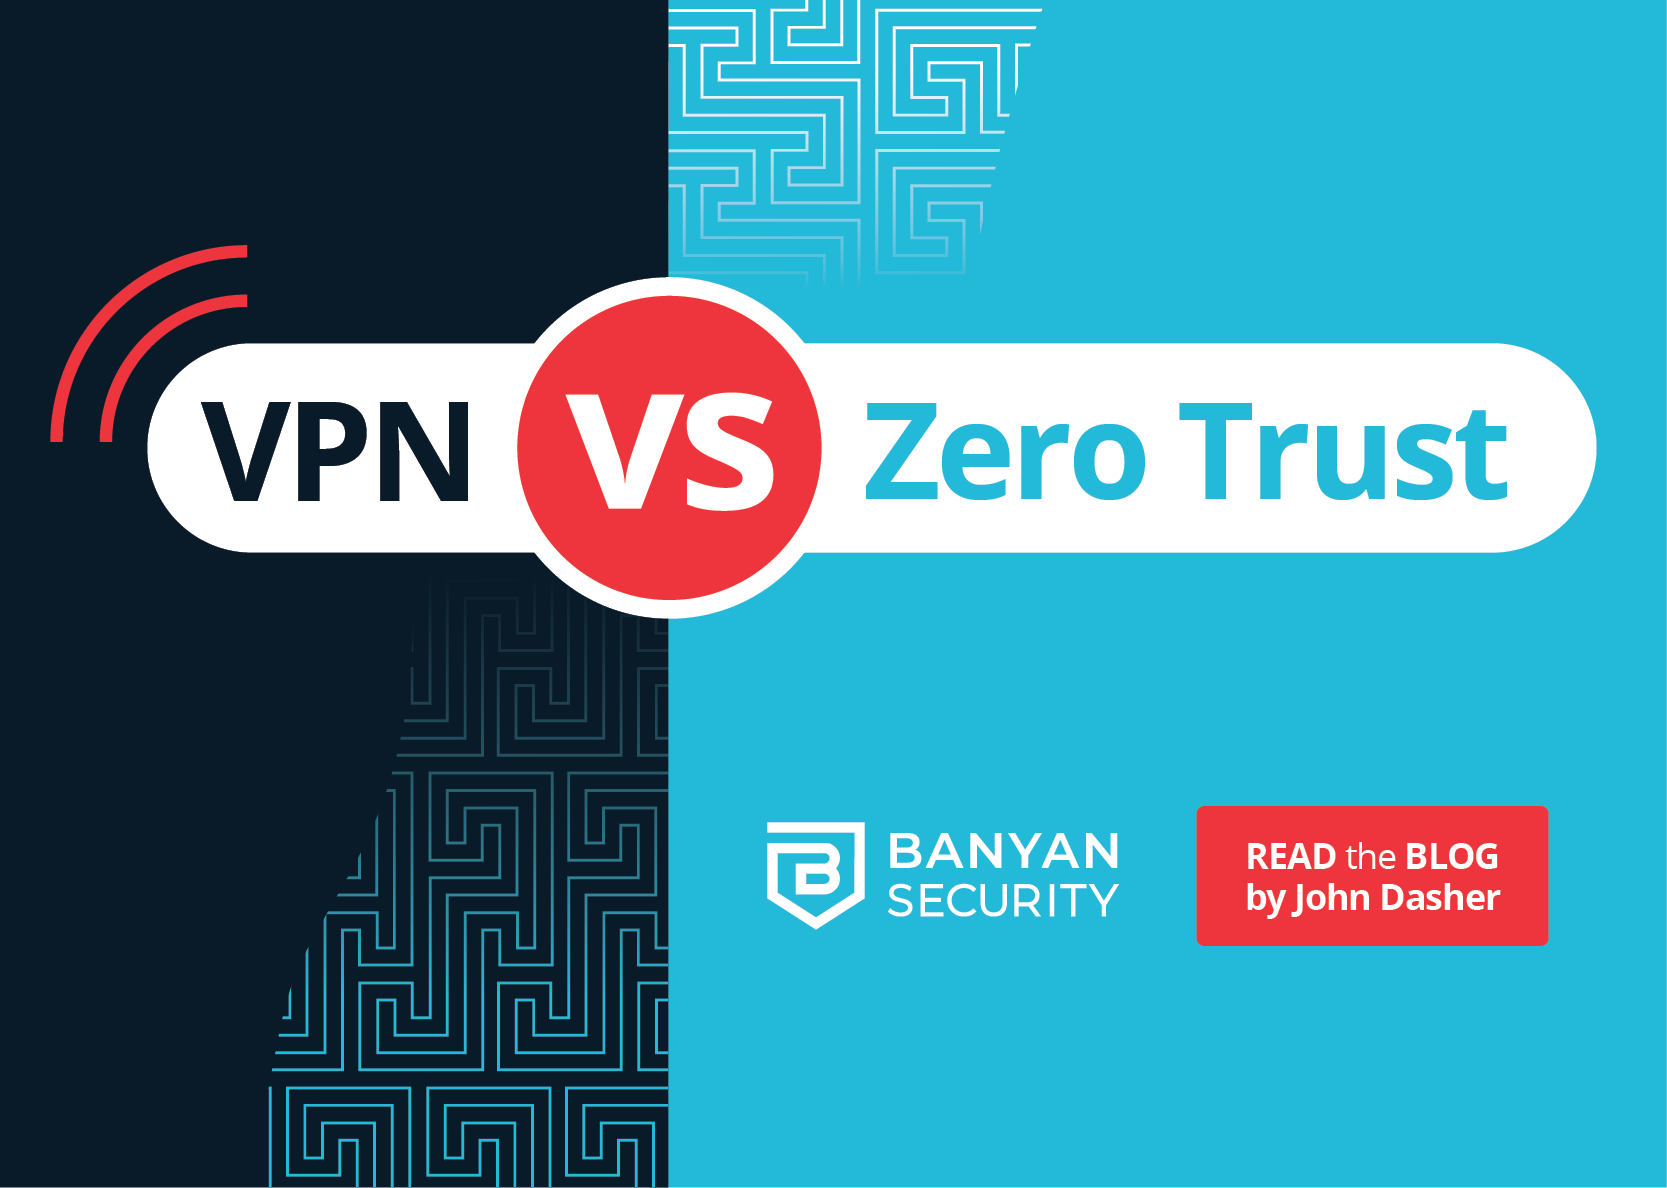 VPN vs. Zero Trust thumb